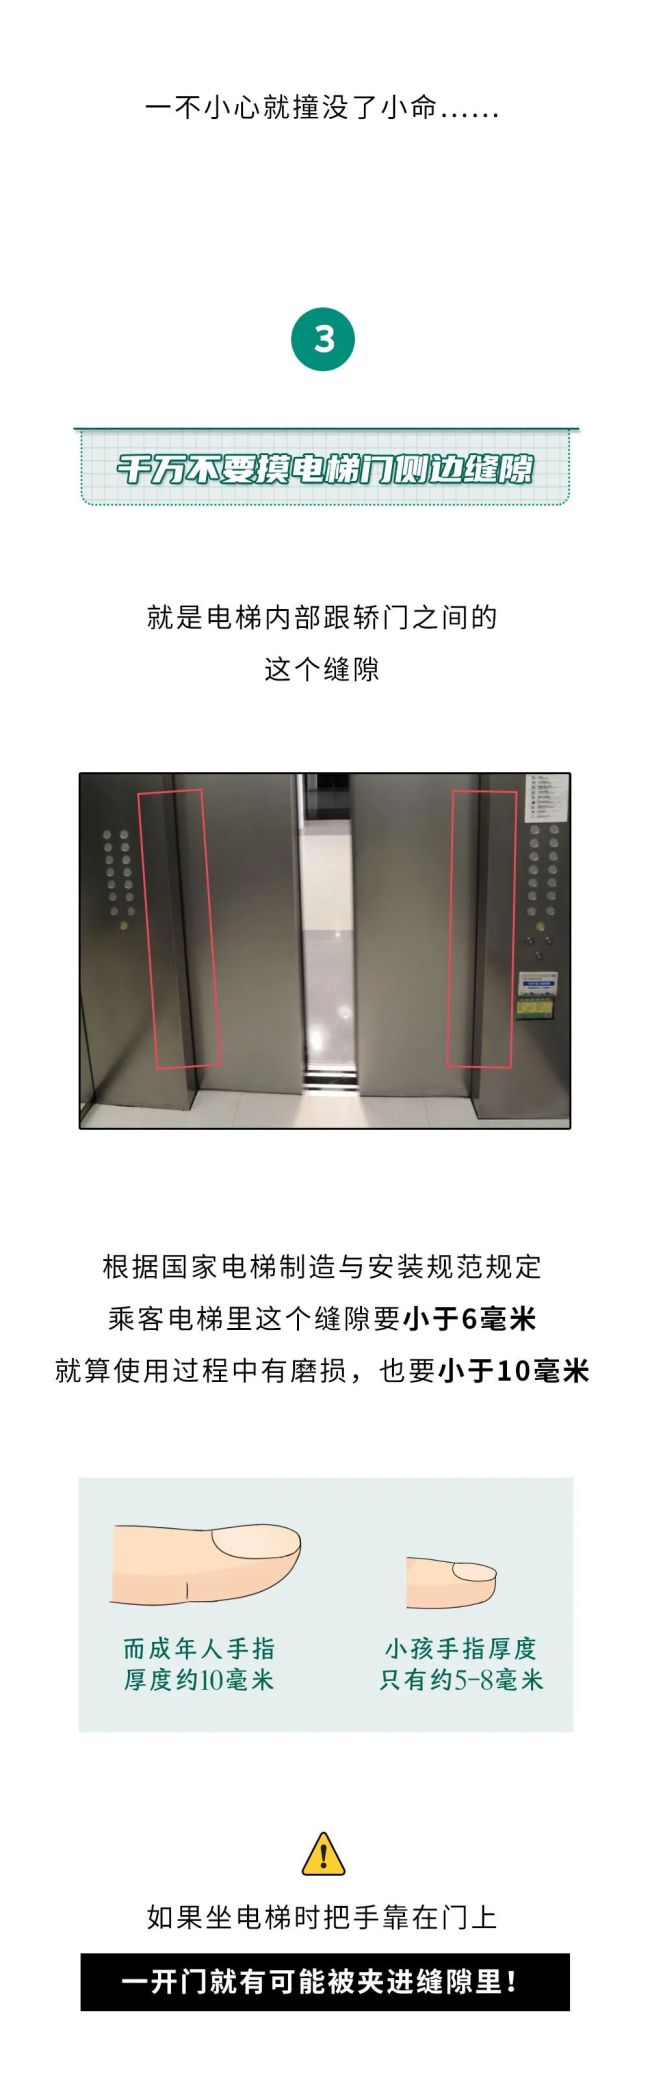 为啥电梯开门看到一堵墙千万不能出 冷静应对，待援更安全